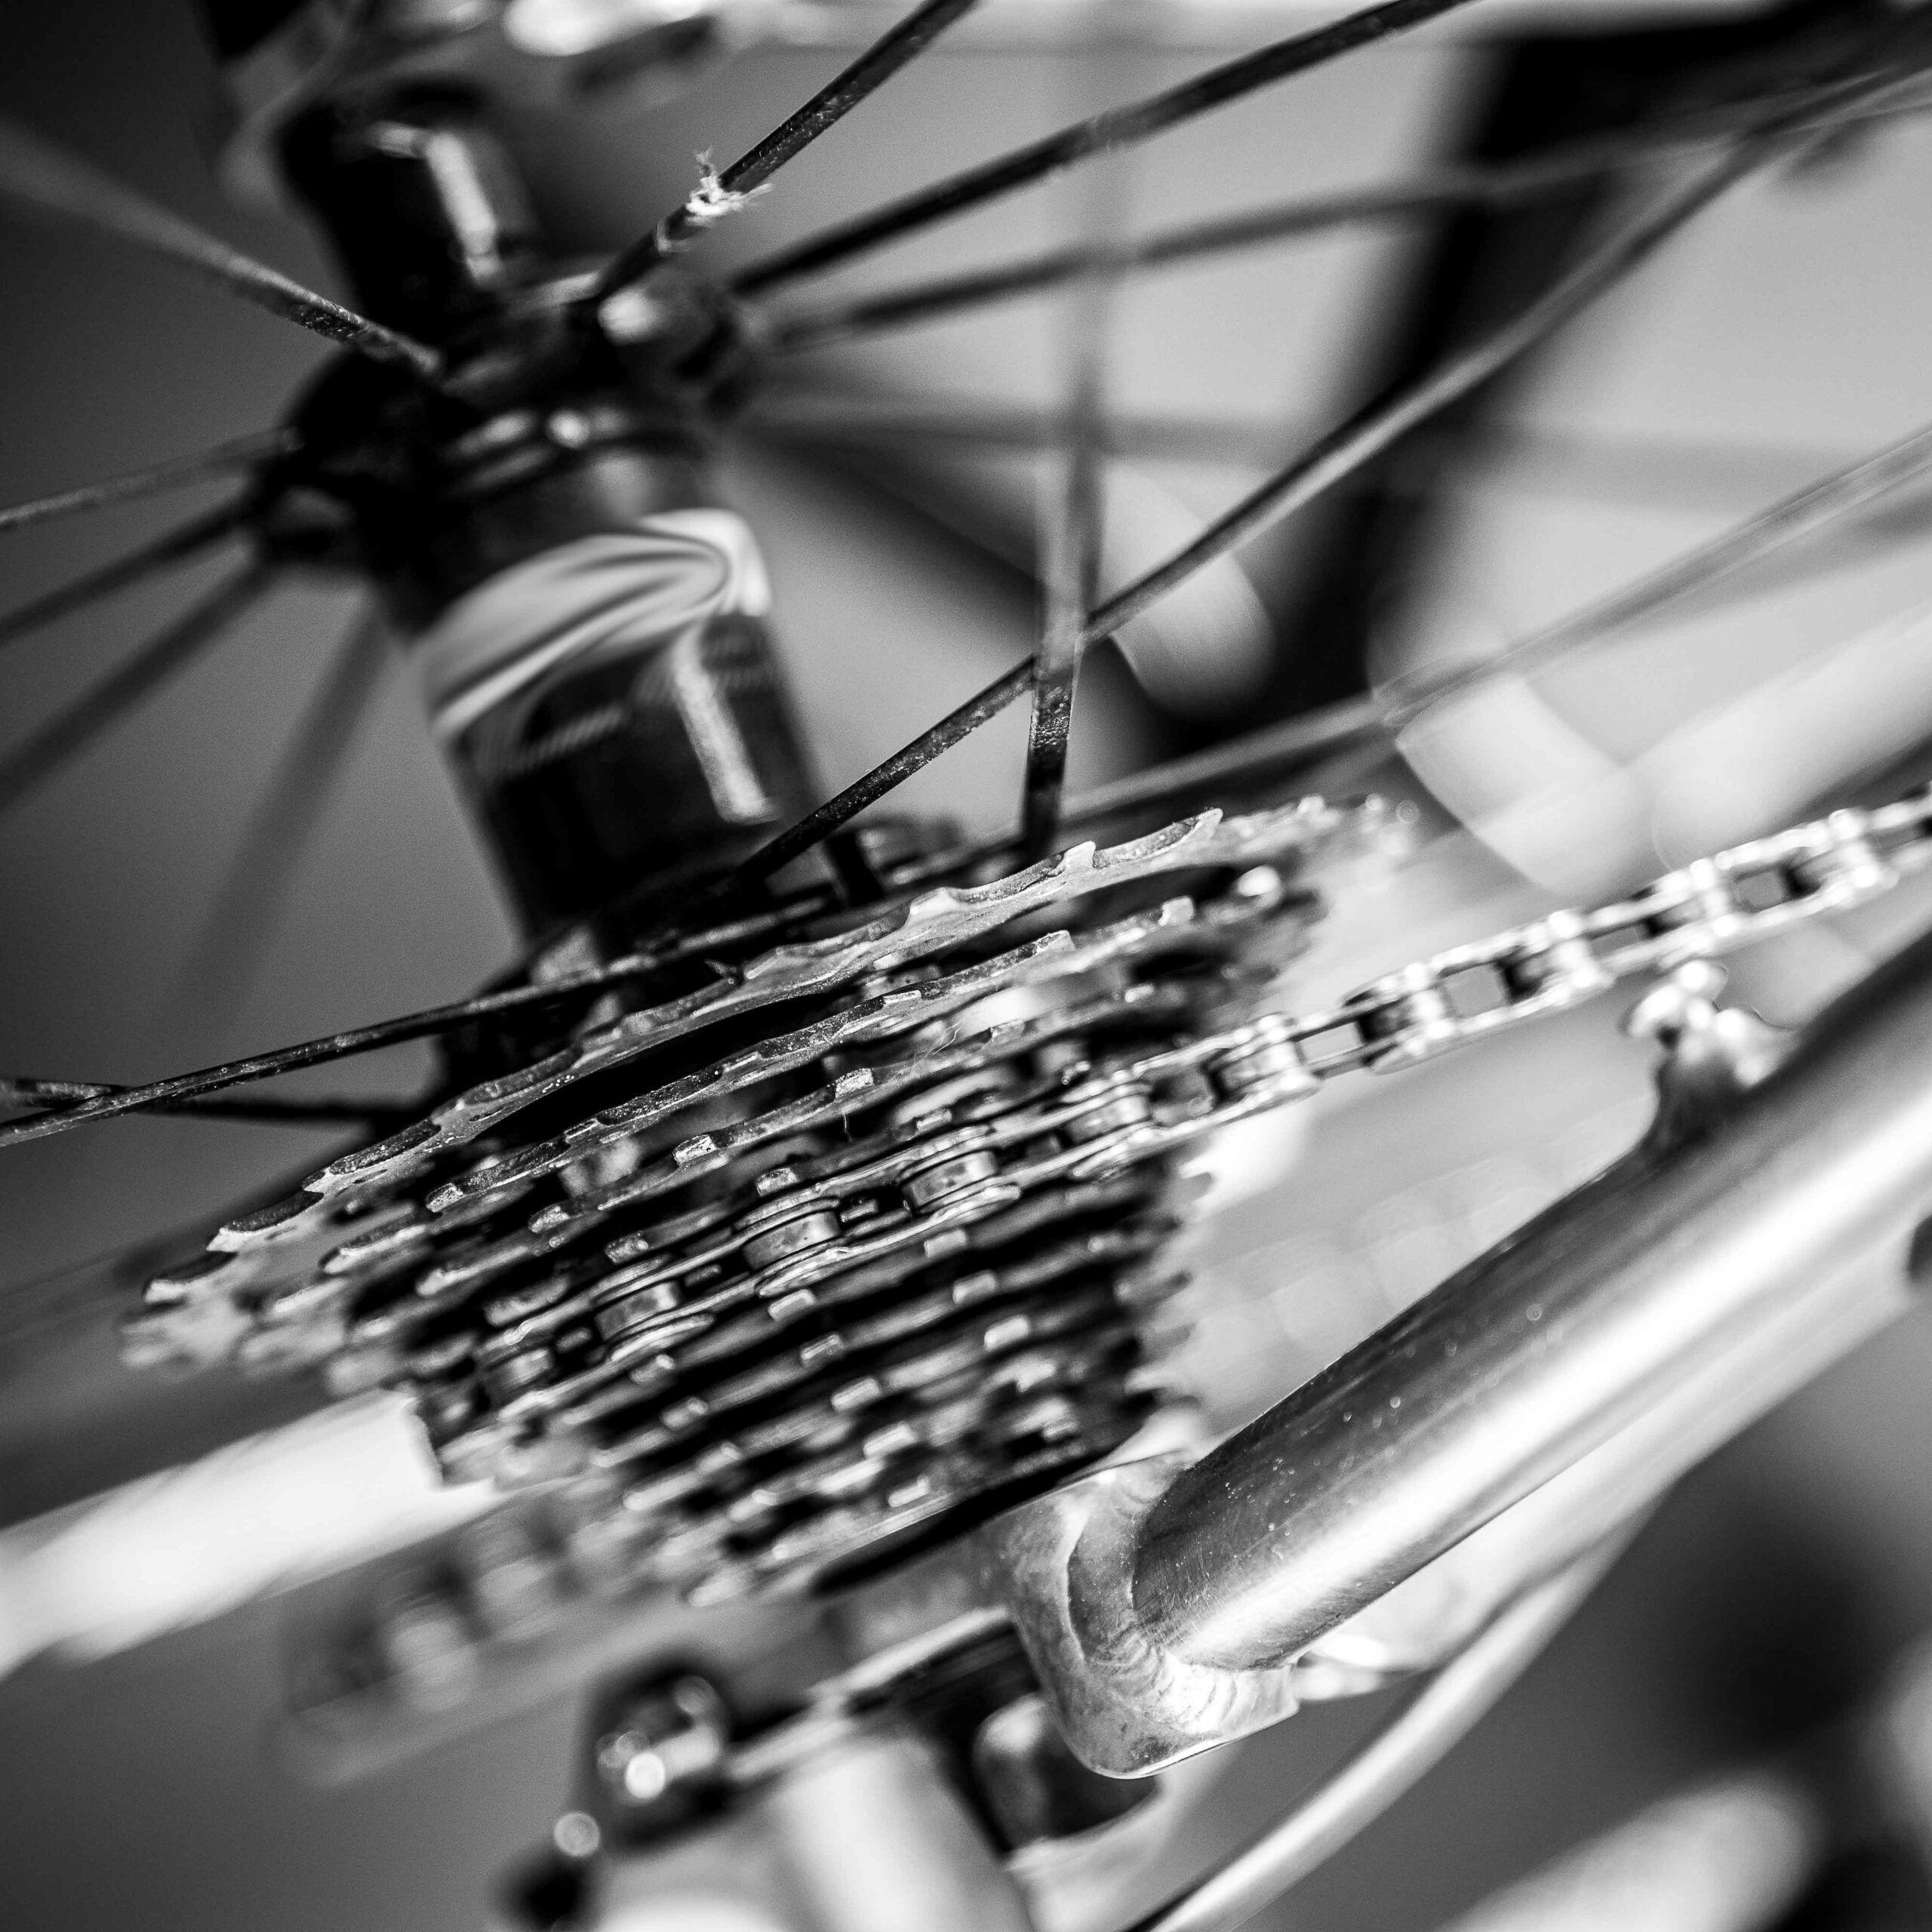 Medidor de cadenas de bicicleta, herramienta de indicador de desgaste,  aleación de aluminio, multifuncional, bicicleta de